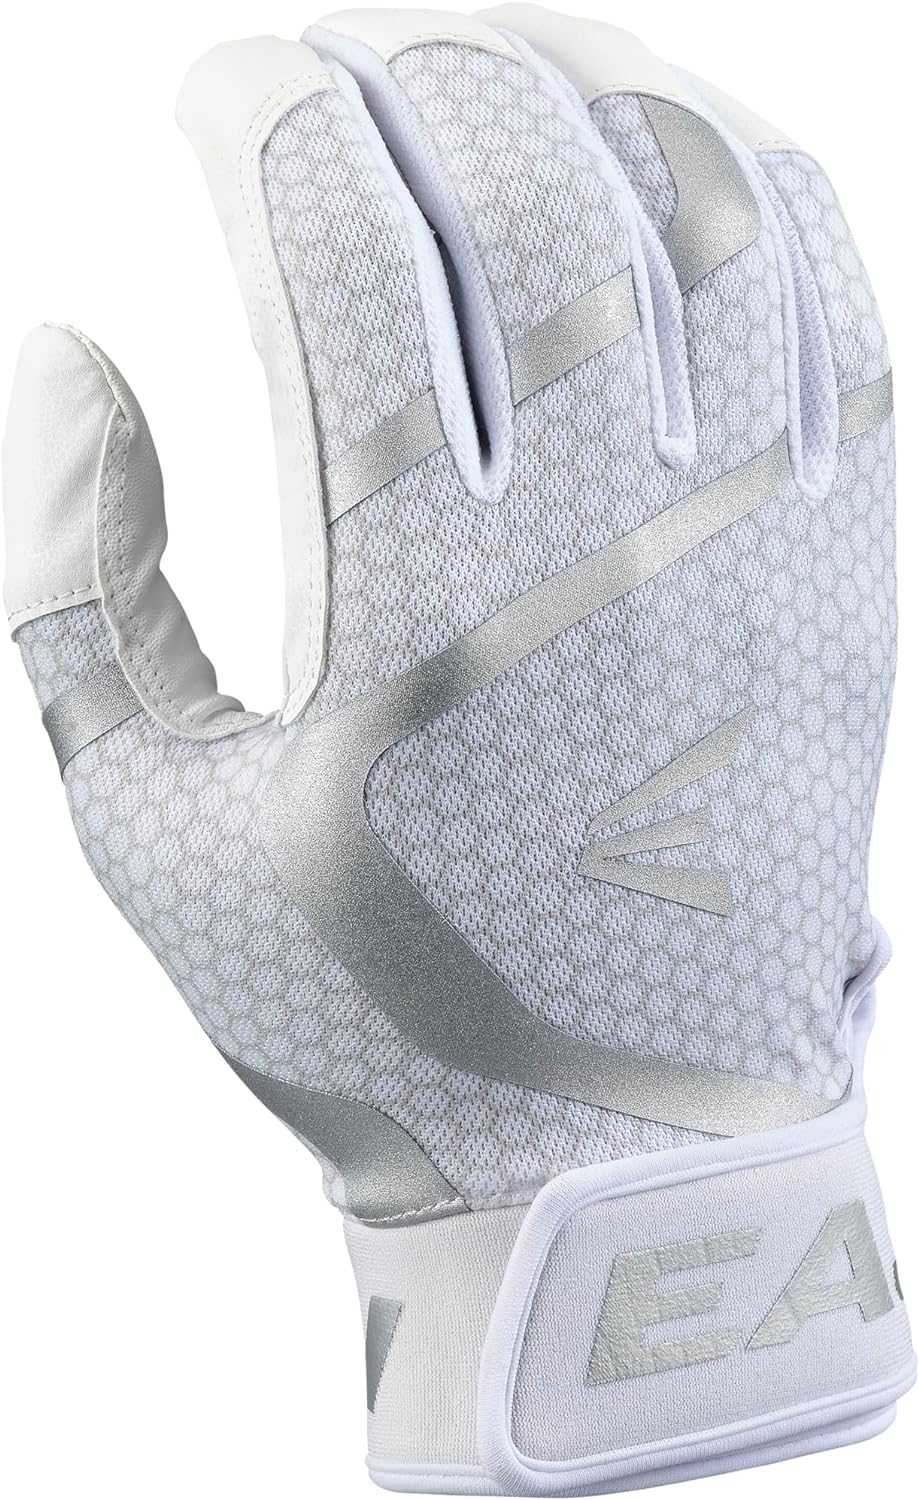 Easton MAV GT Batting Gloves - White - HIT a Double